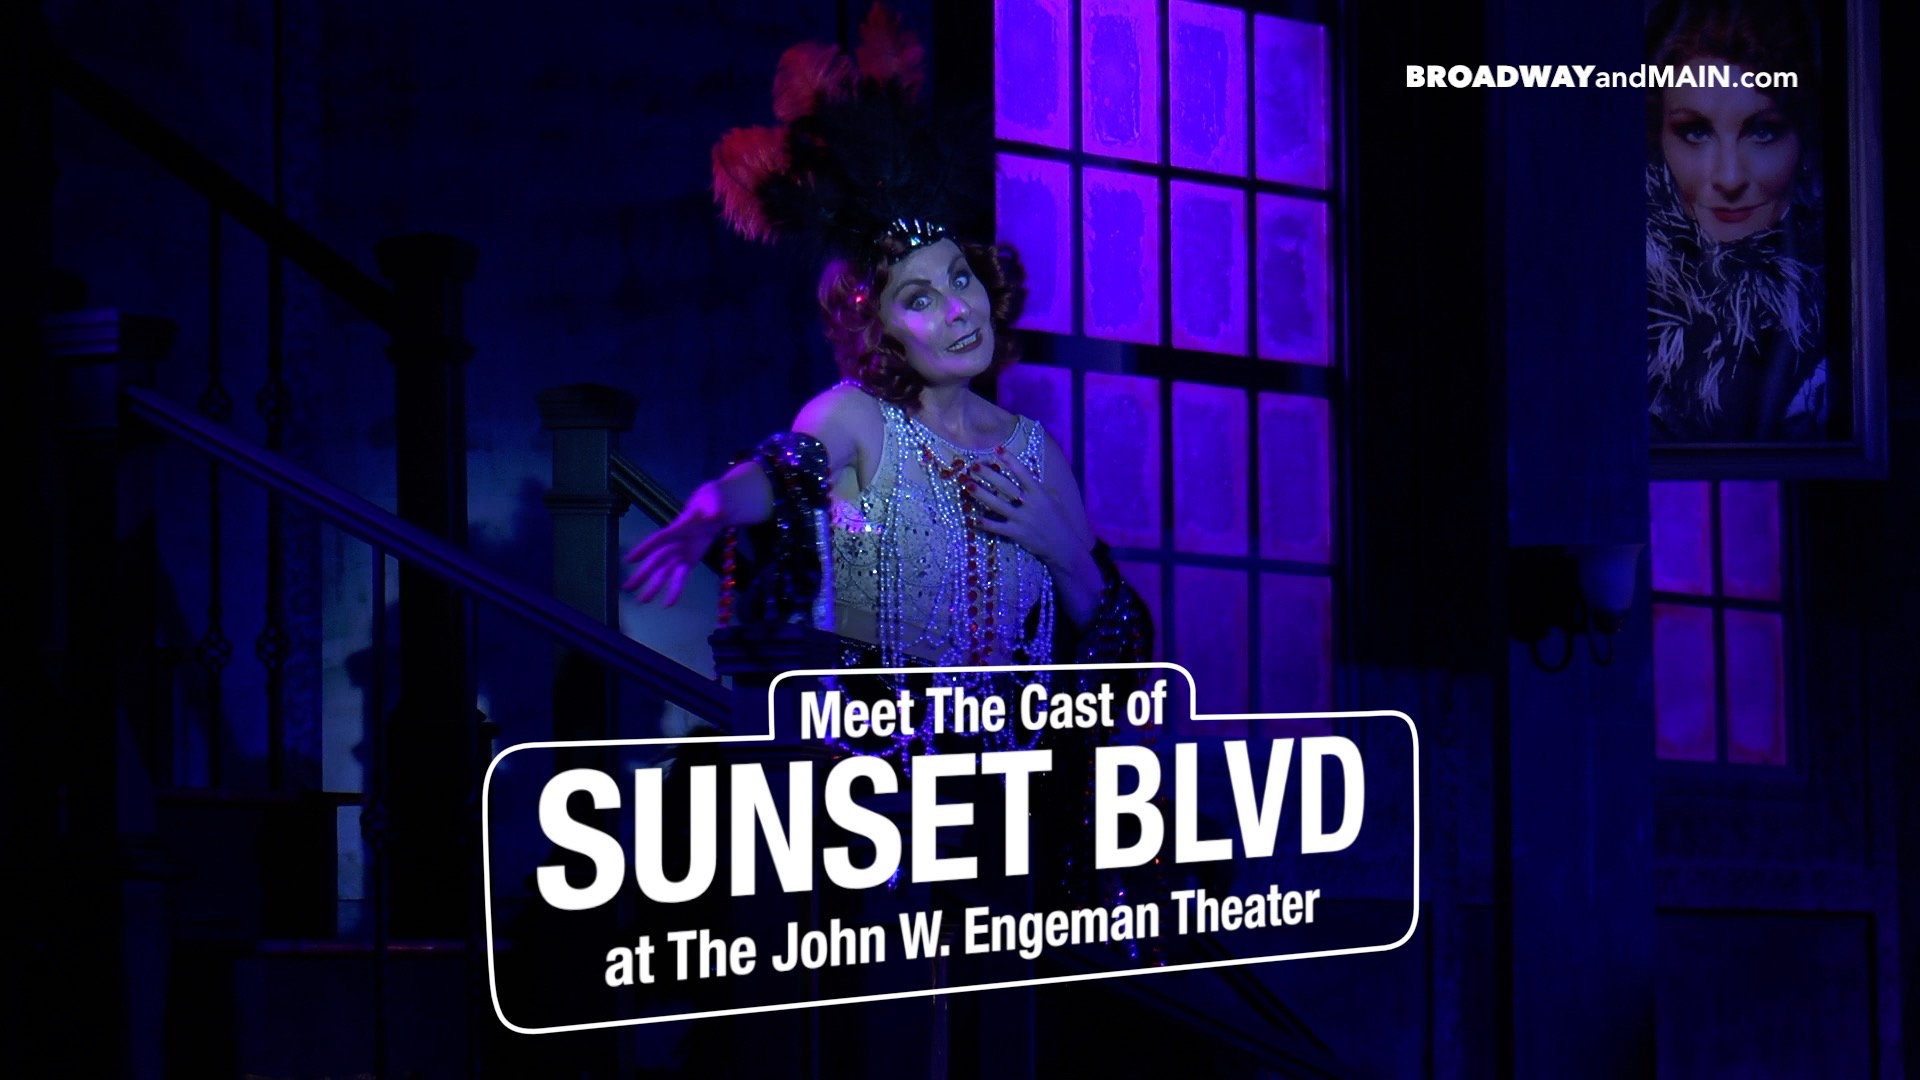 Meet The Cast of Sunset Blvd at the John W Engeman Theater